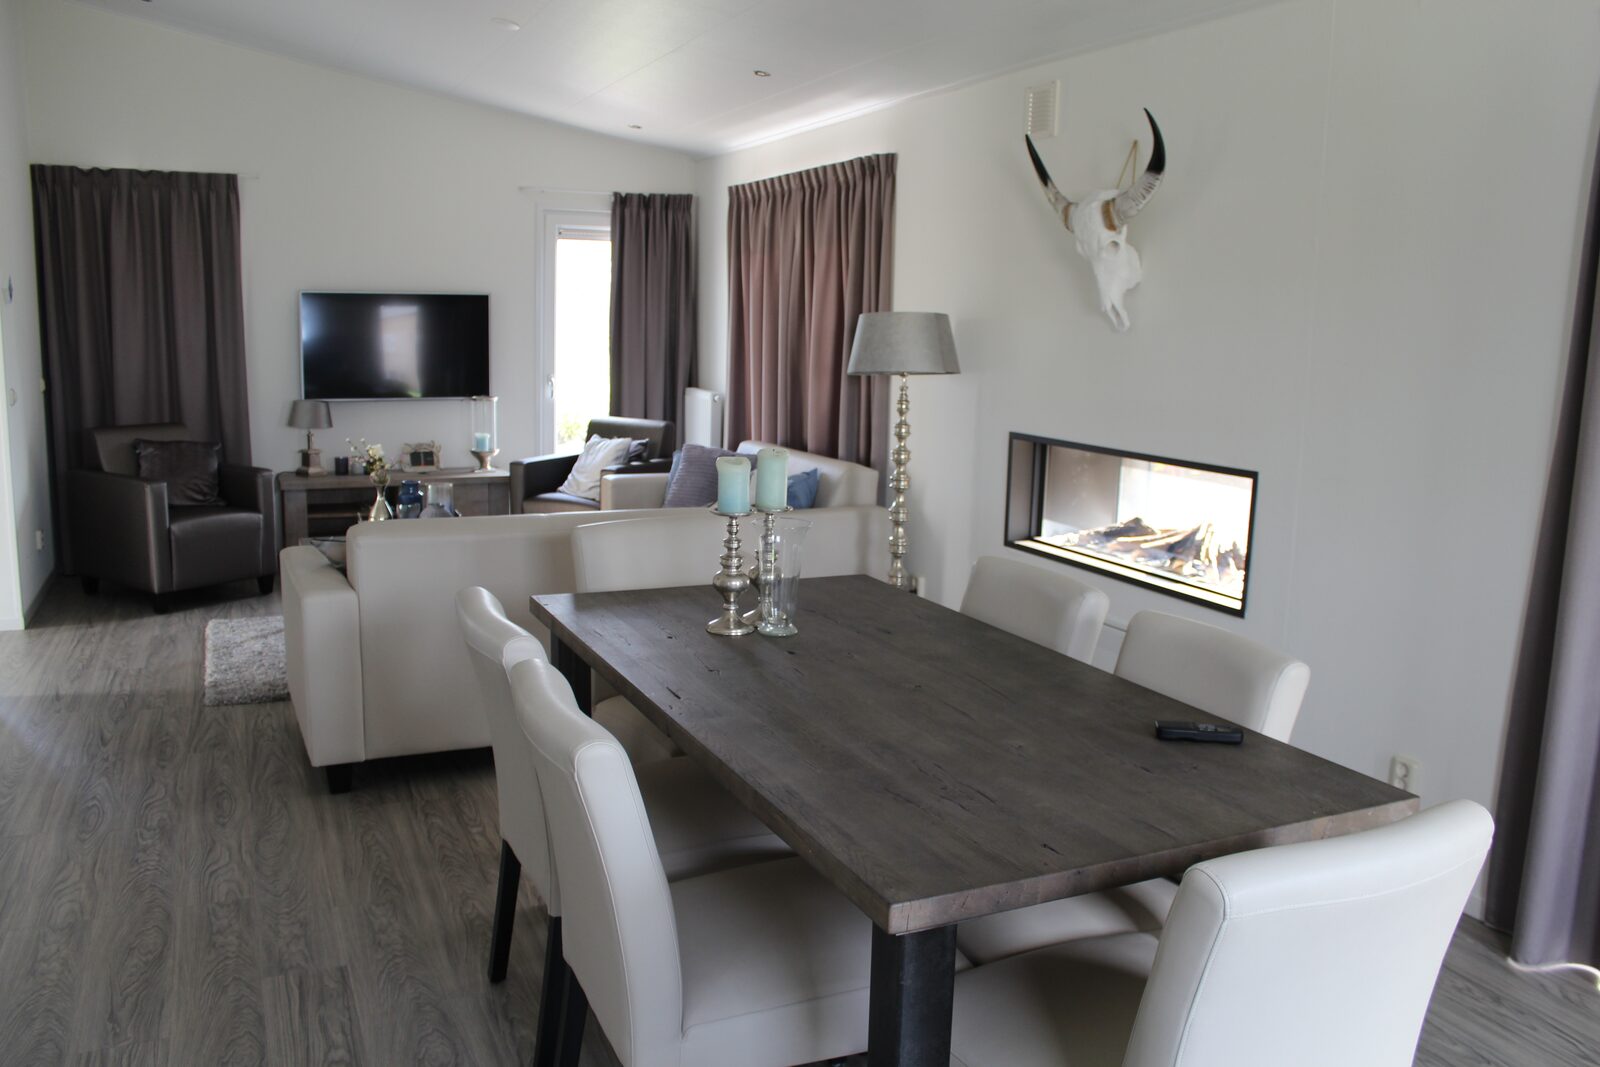 Schaelsbergerbosch – Rental – Living Room